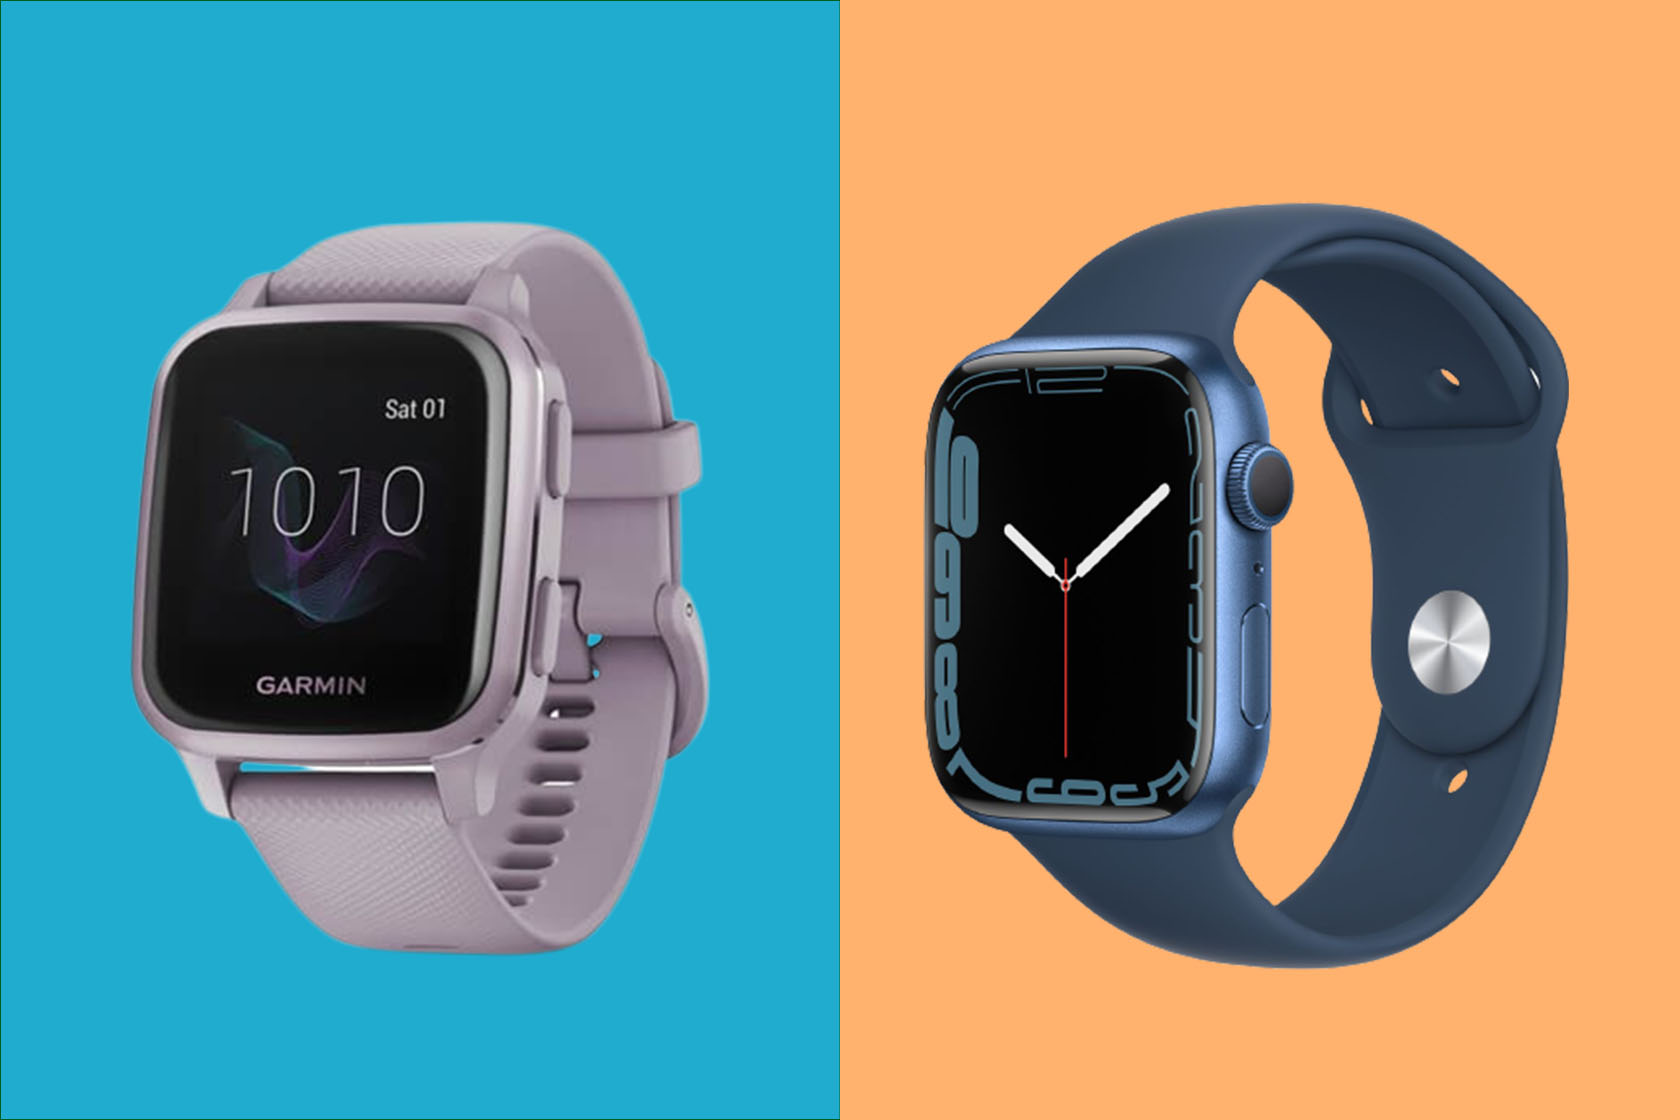 Apple Watch vs Garmin: Which is better?